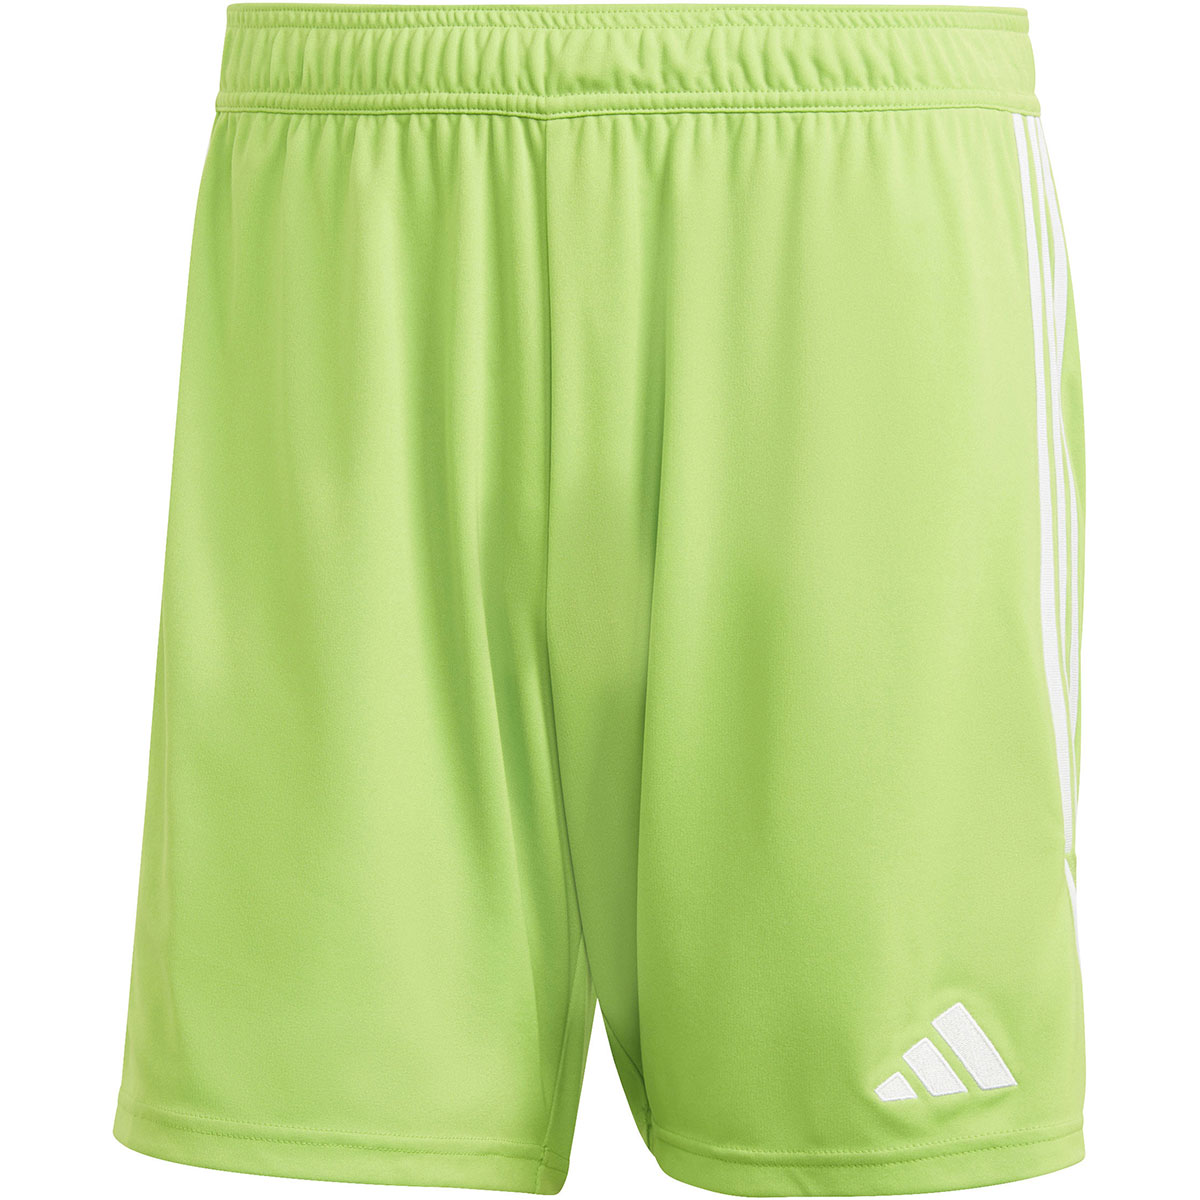 Adidas Herren Shorts Tiro 23 grün-weiß